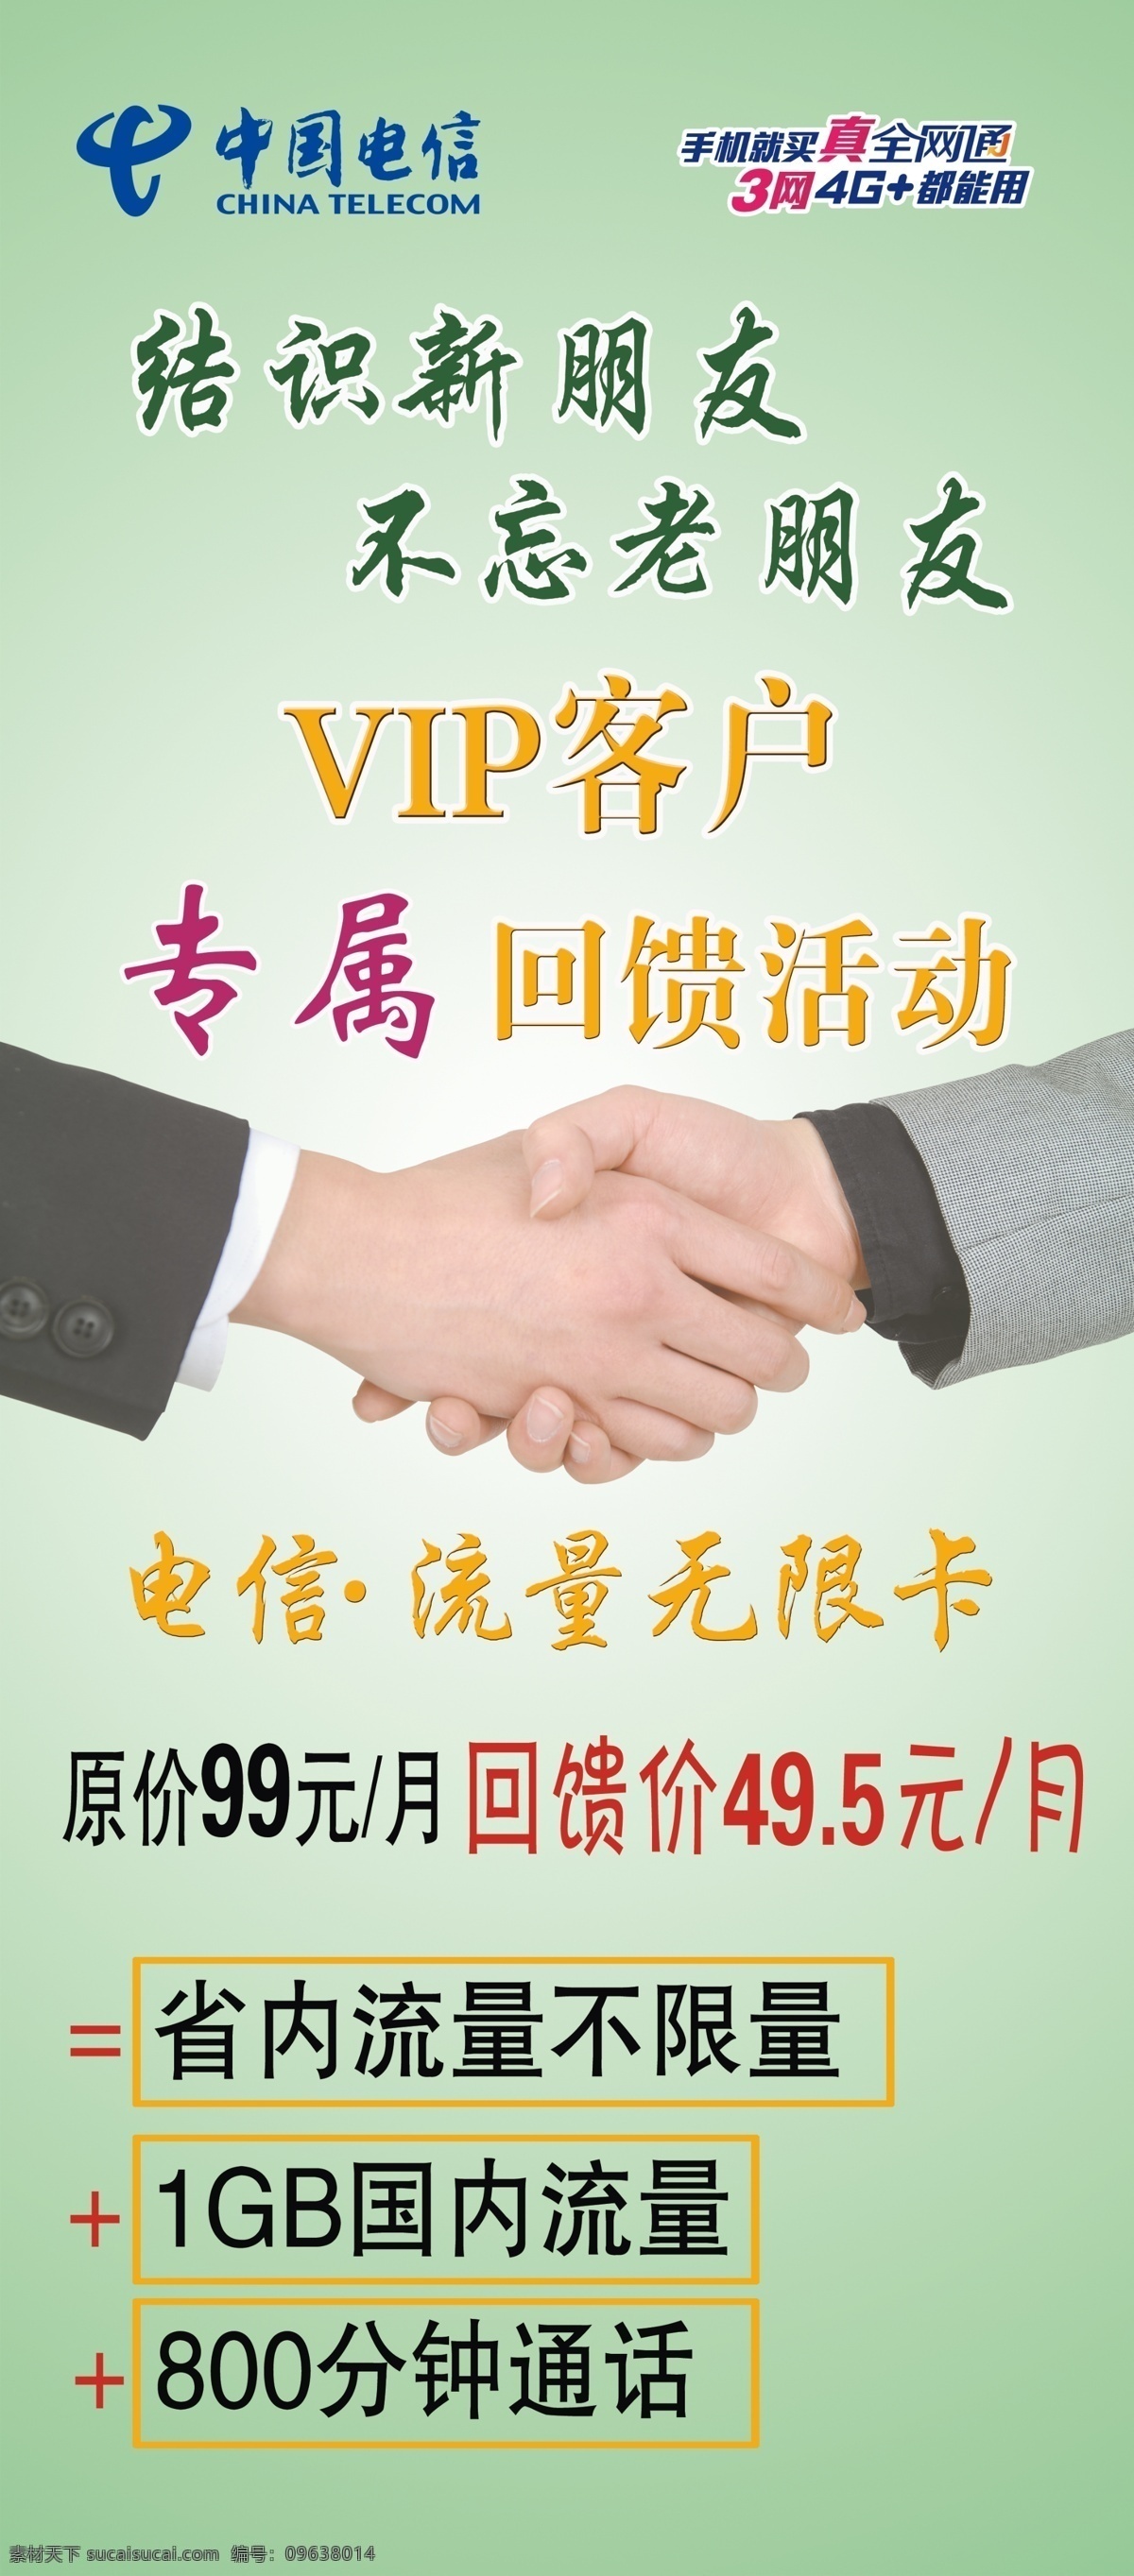 中国电信 vip客户 回馈活动 电信 全网通 流量无限卡